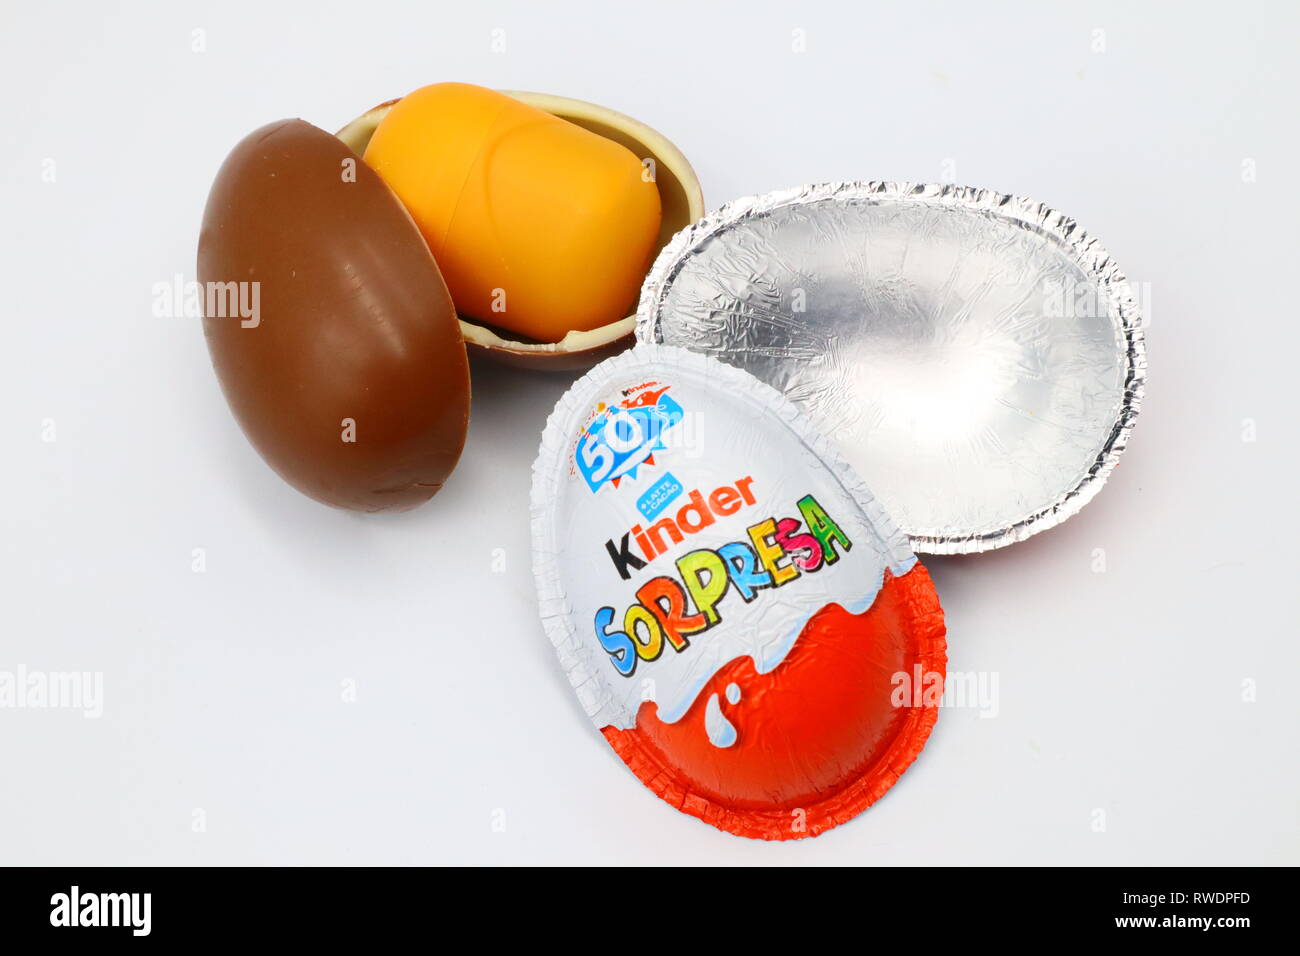 Kinder sorpresa di uova di cioccolato. Kinder sorpresa è un marchio di prodotti realizzati in Italia da Ferrero Foto Stock